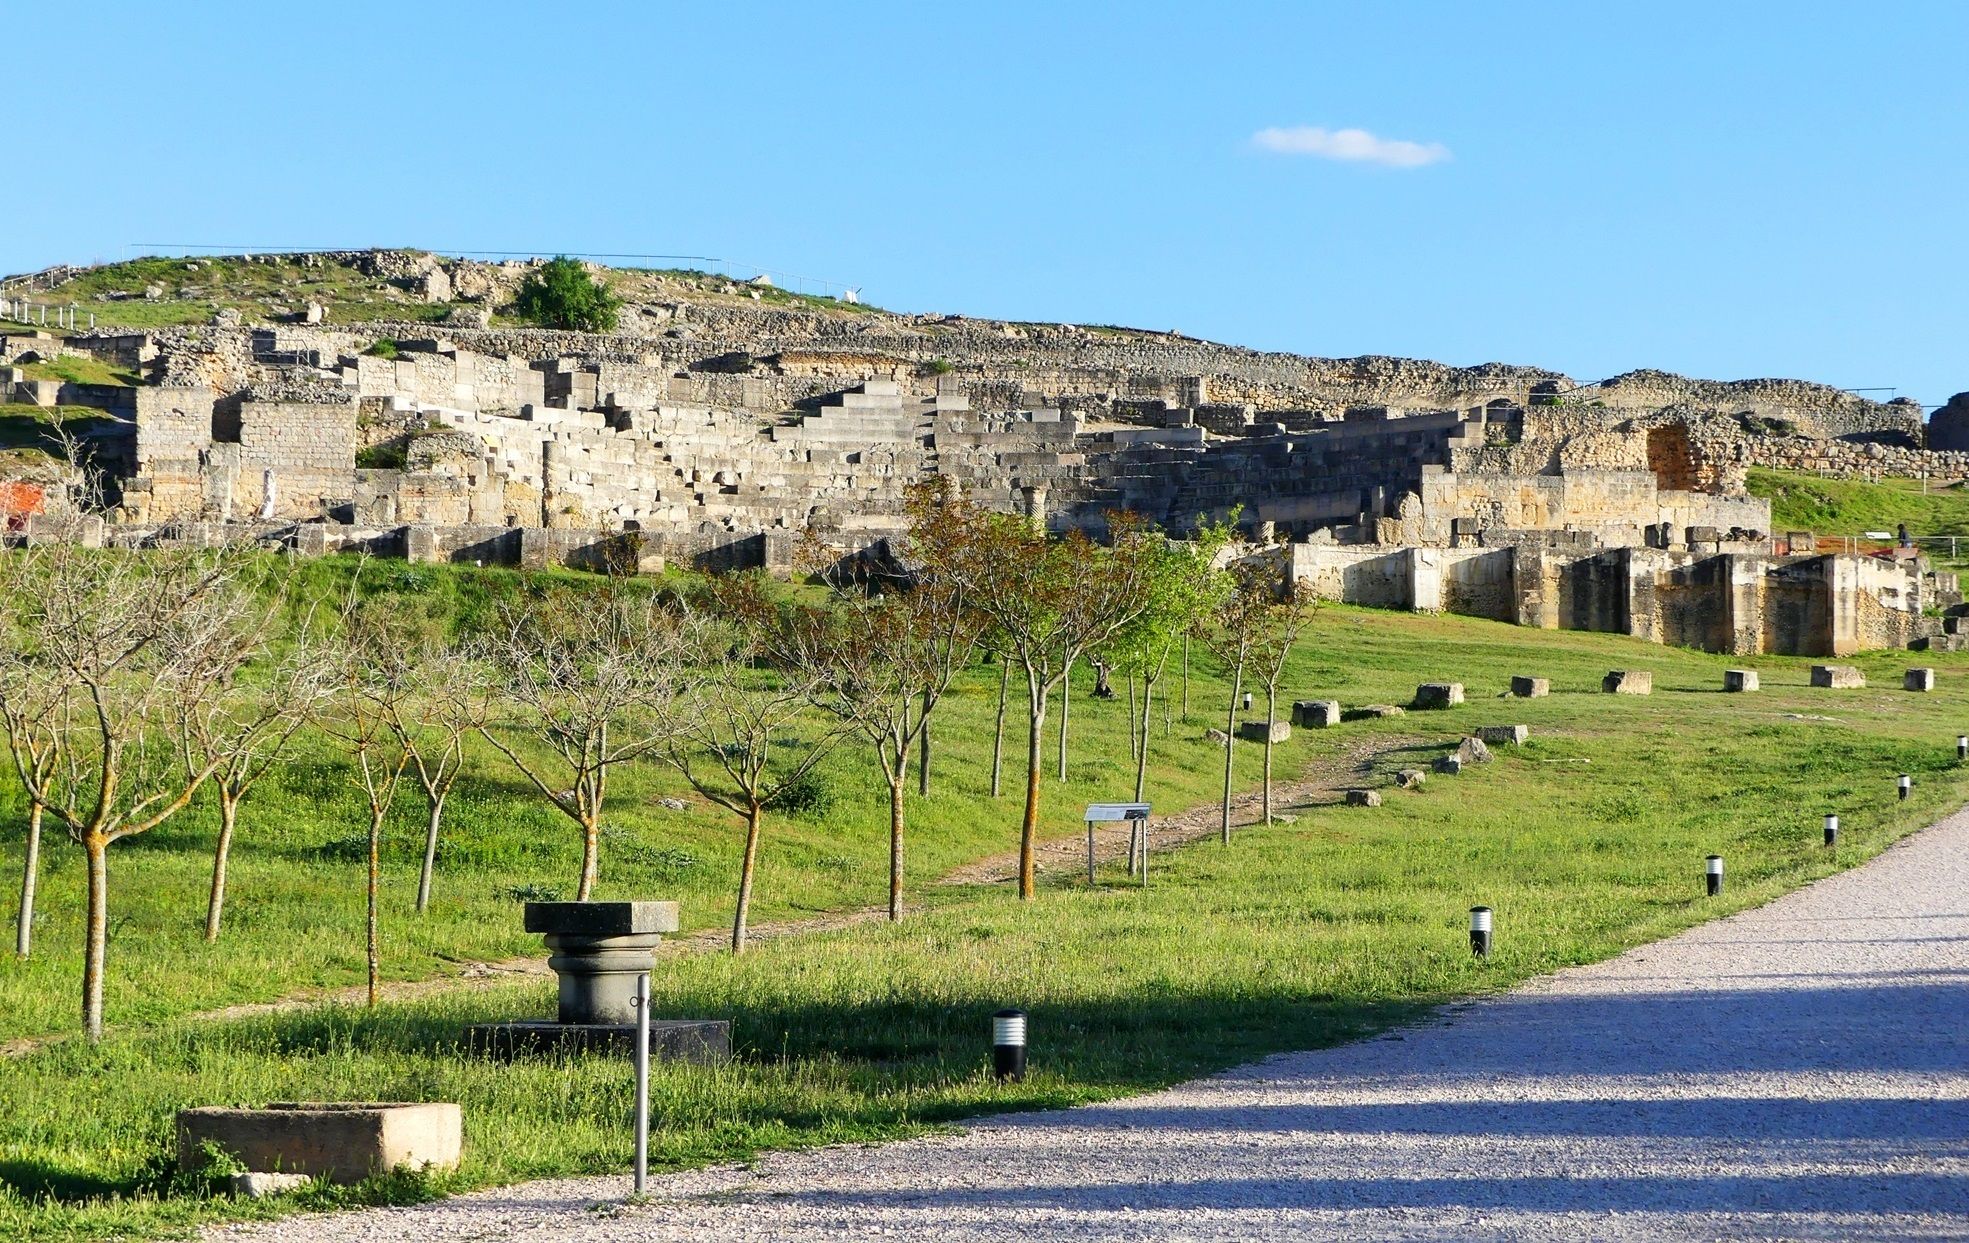 El yacimiento romano de Segóbriga, lugar emblemático de la arqueología y museología